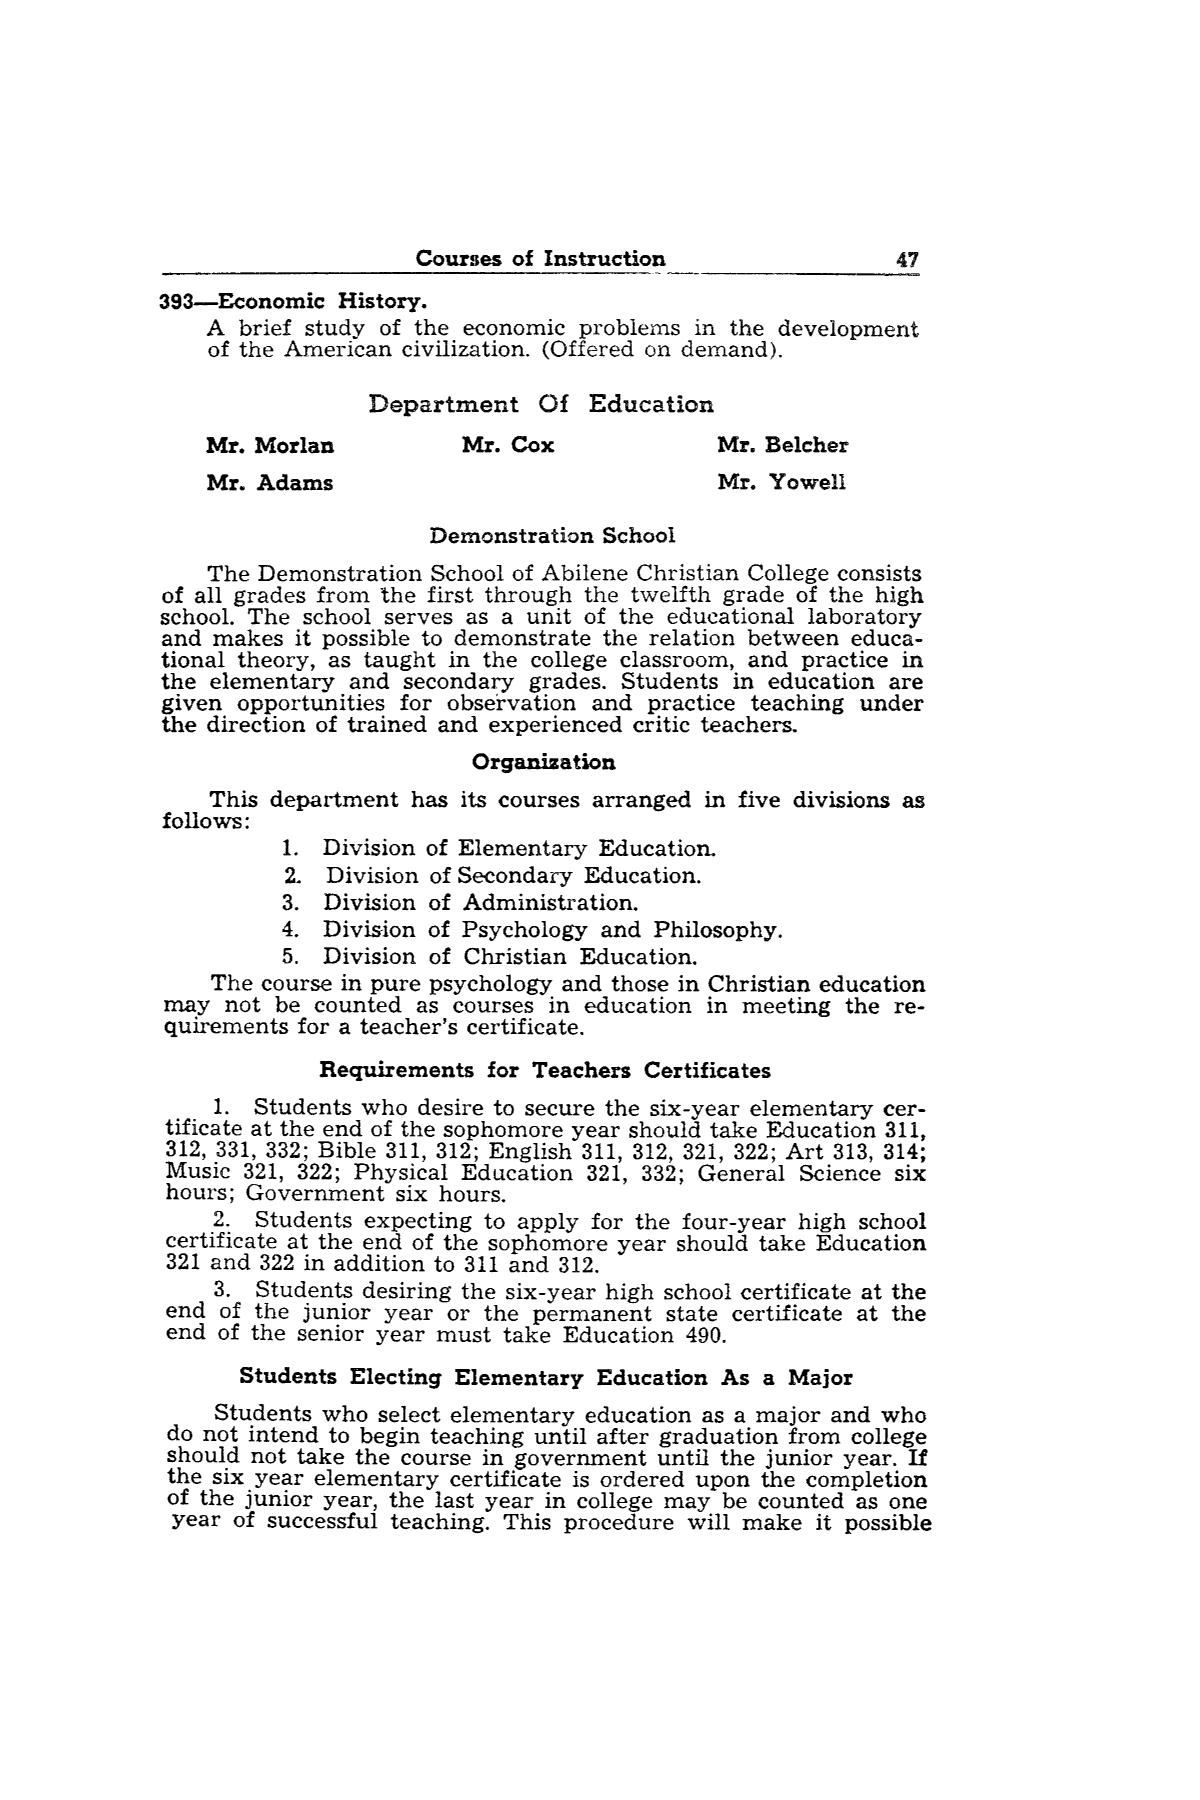 Catalog of Abilene Christian College, 1943-1944
                                                
                                                    47
                                                